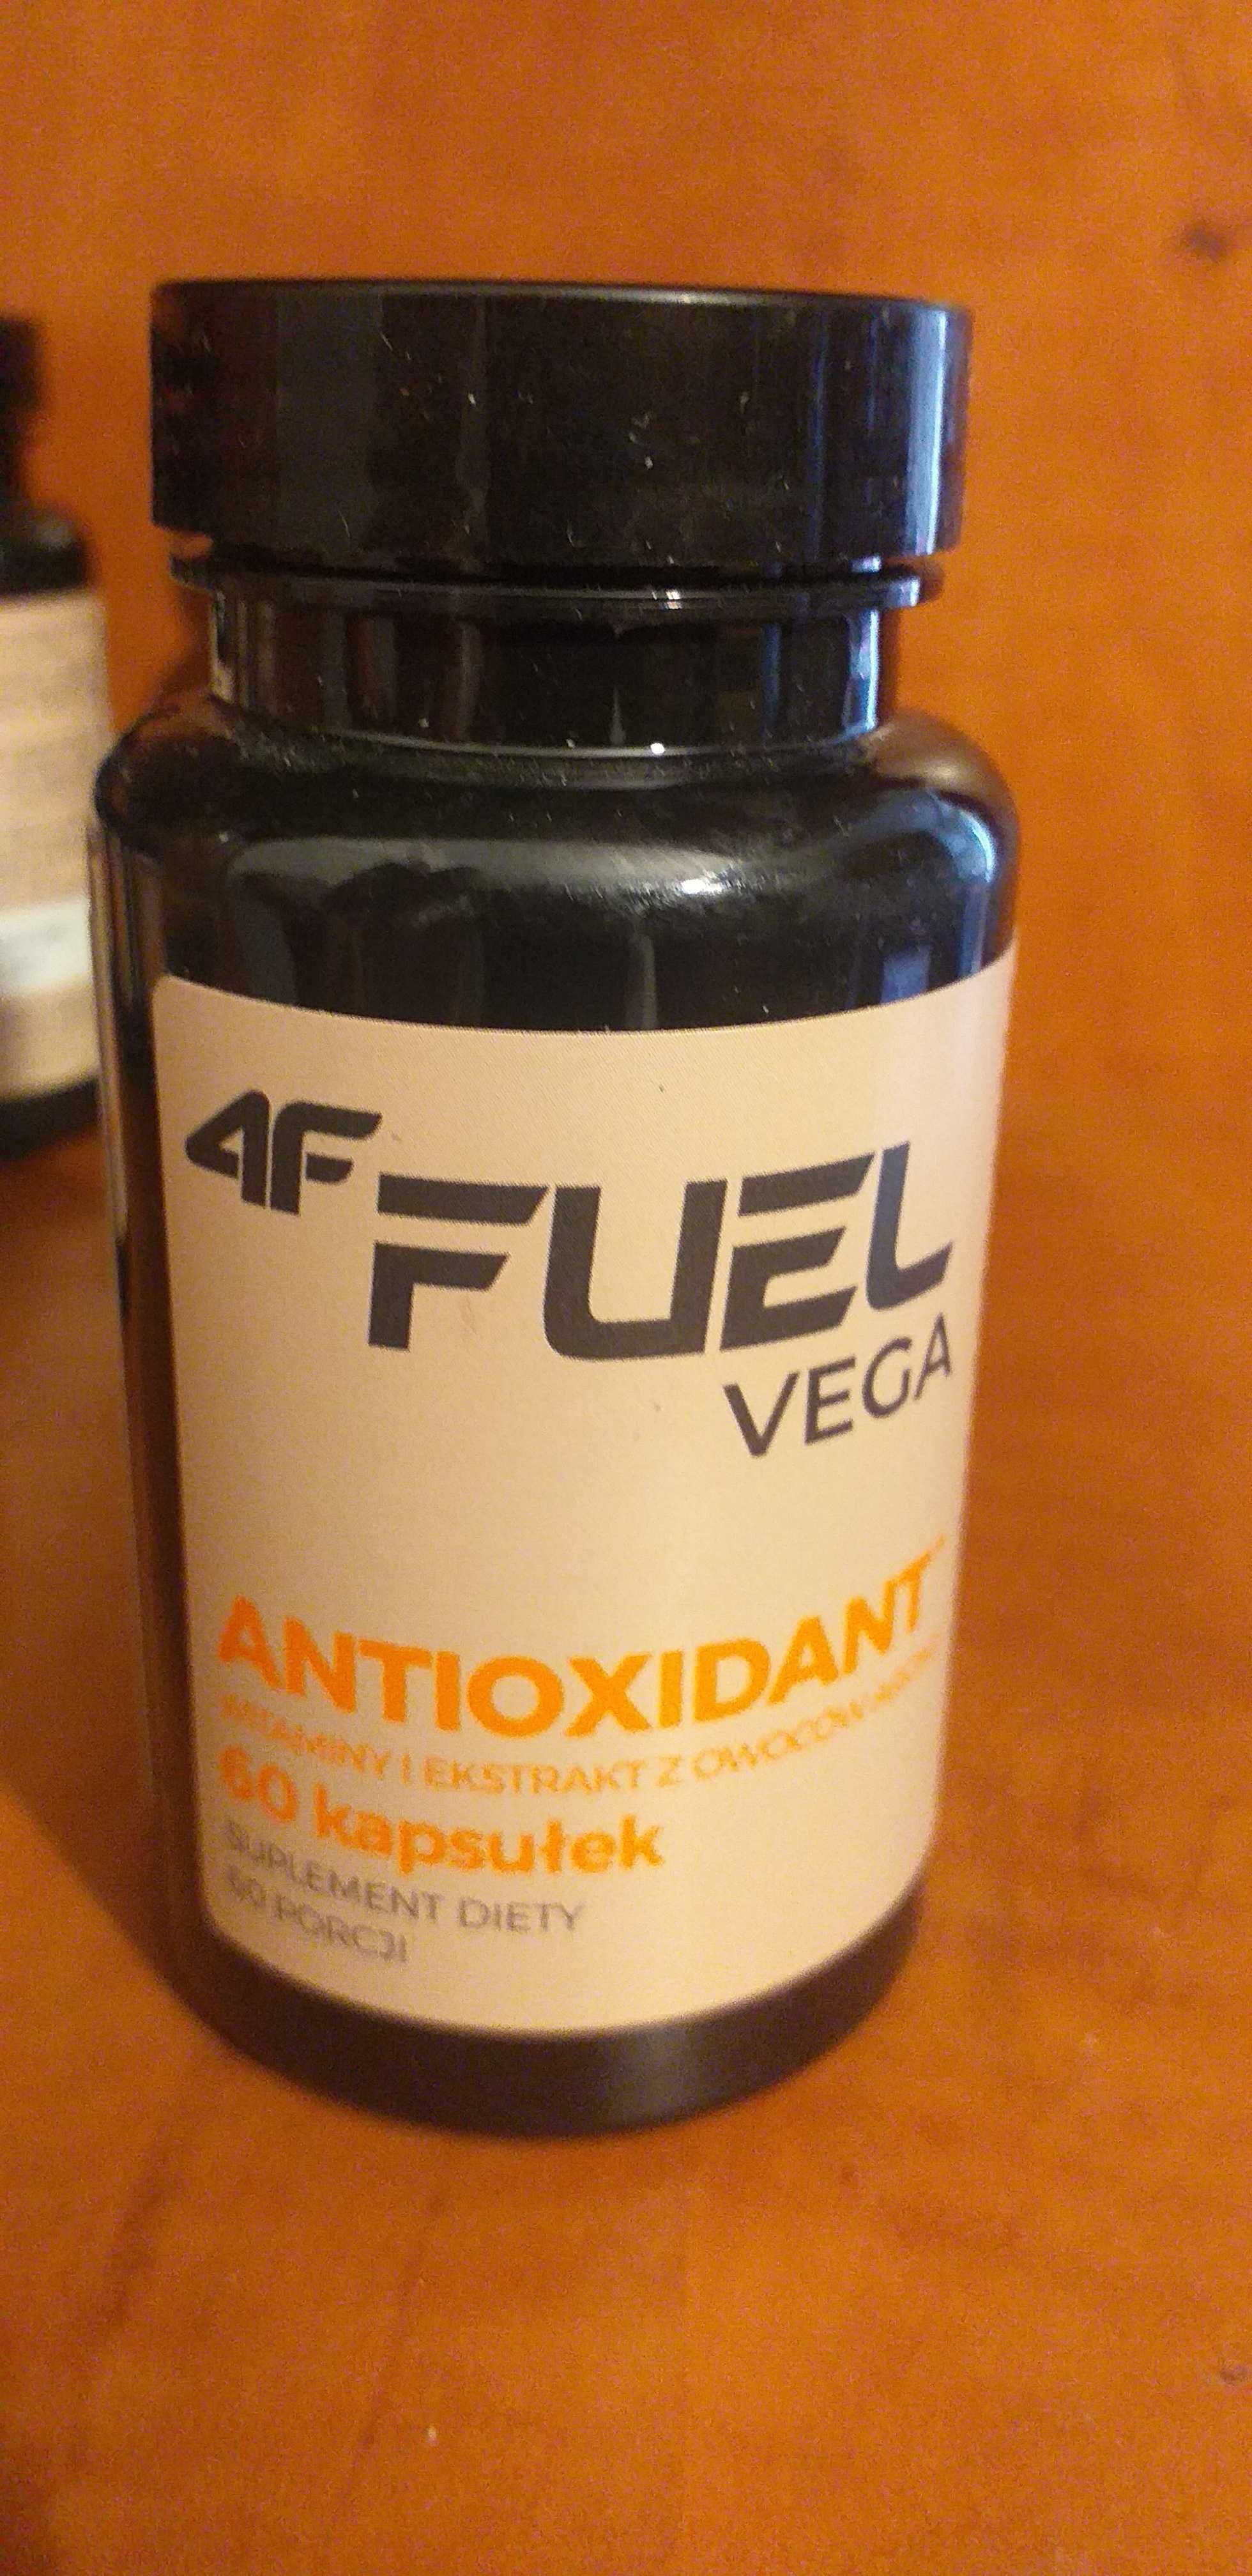 12 x 4F Fuel VEGA Antioxidant 60 kapsułek